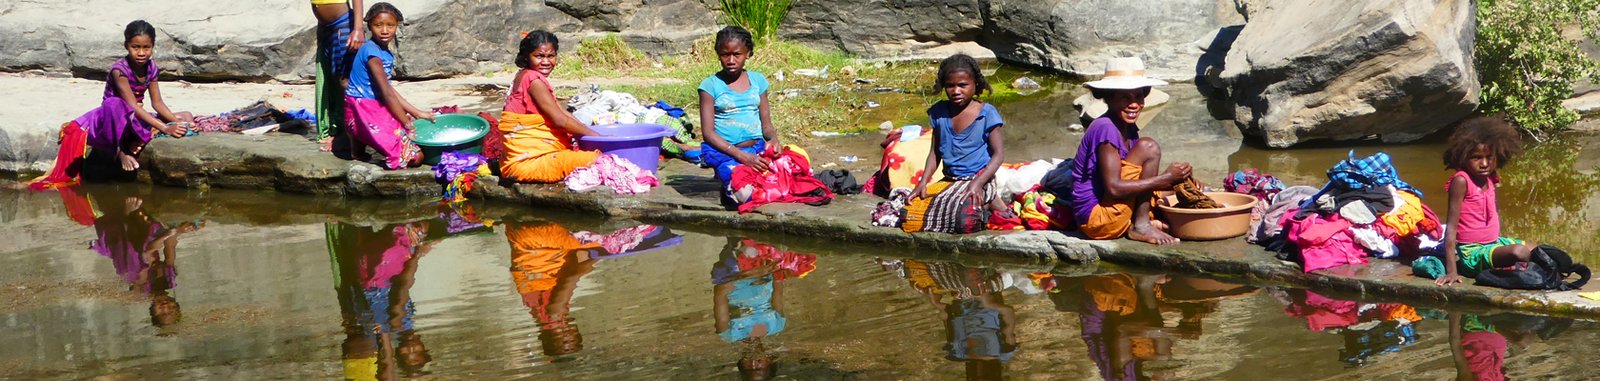 Junge Mädchen waschen am Fluß die Wäsche anderer